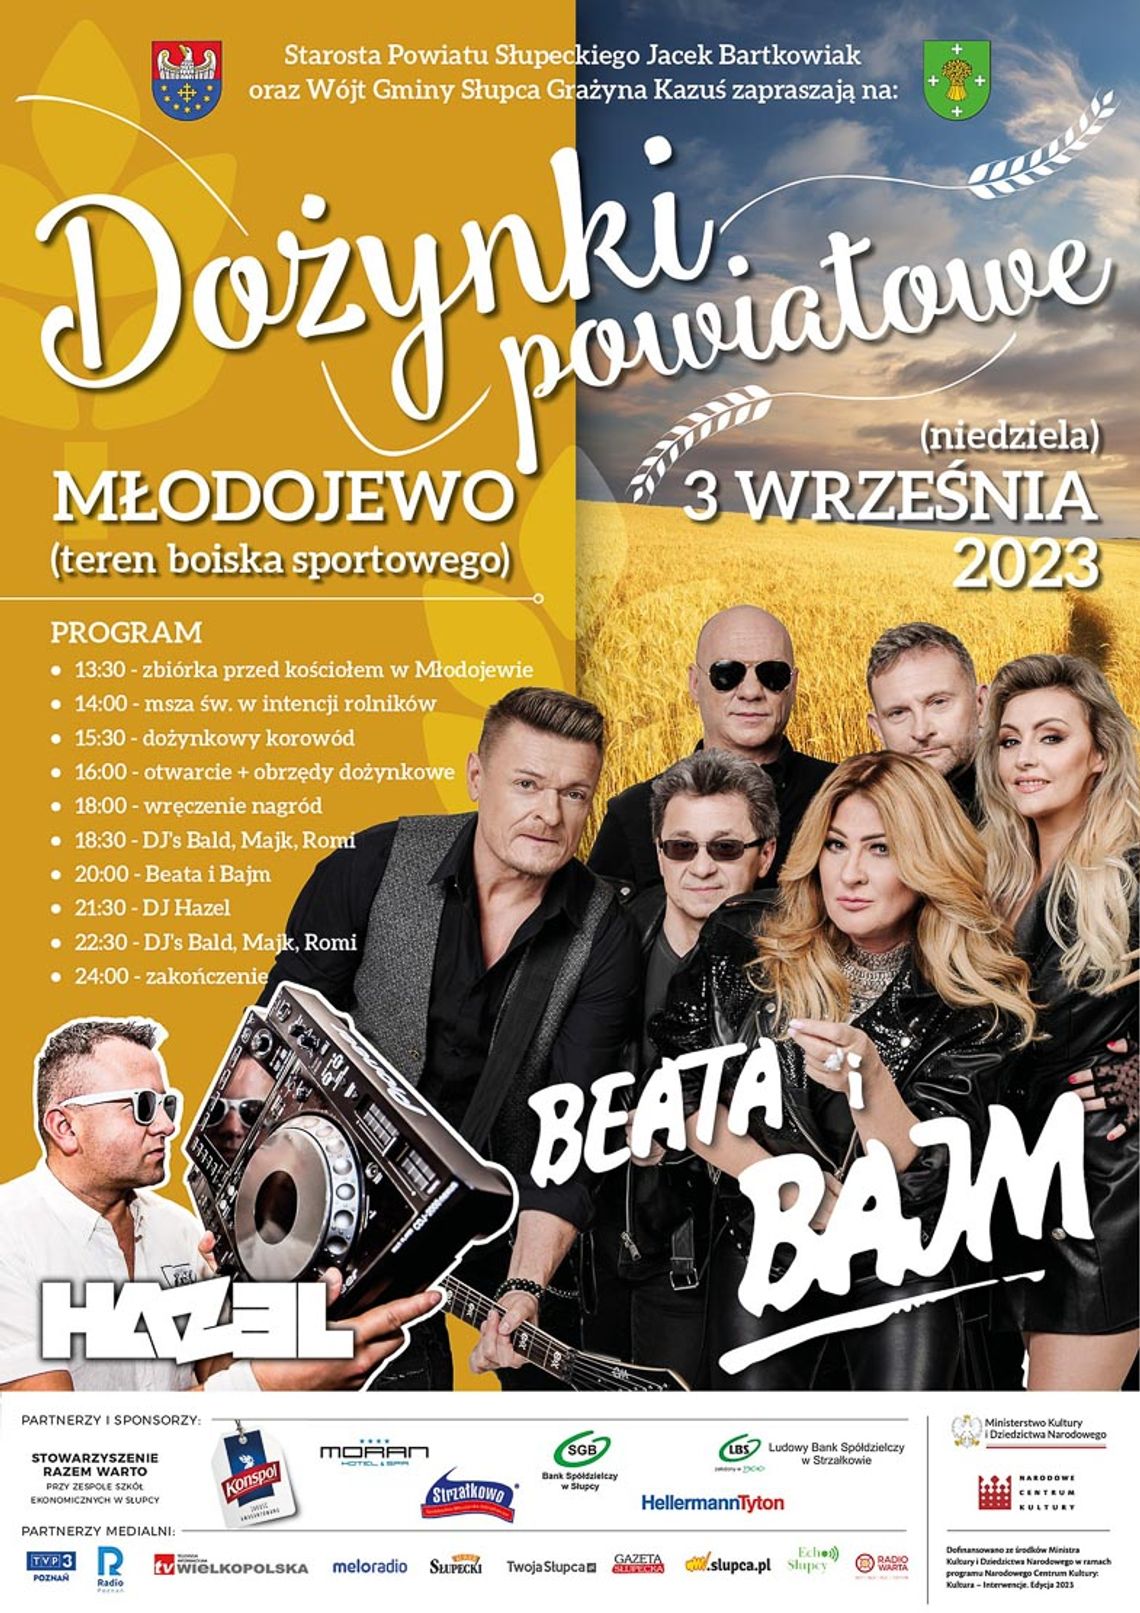 Bajm i DJ Hazel muzycznymi gwiazdami dożynek powiatowych w Młodojewie